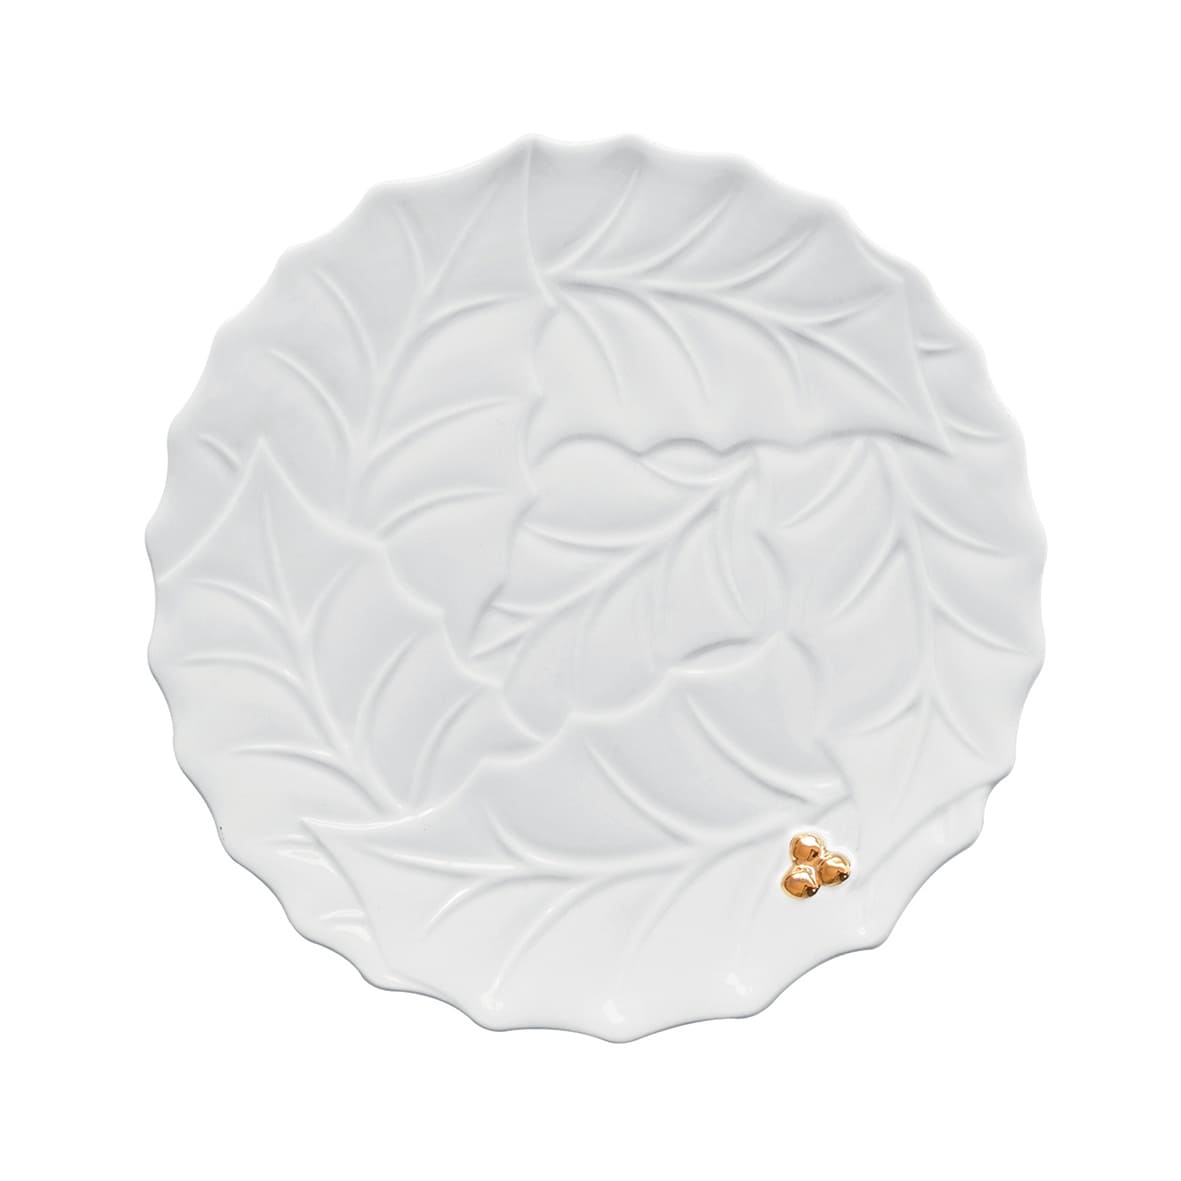 Porselen Servis Tabağı Ø 30,0 cm - Beyaz